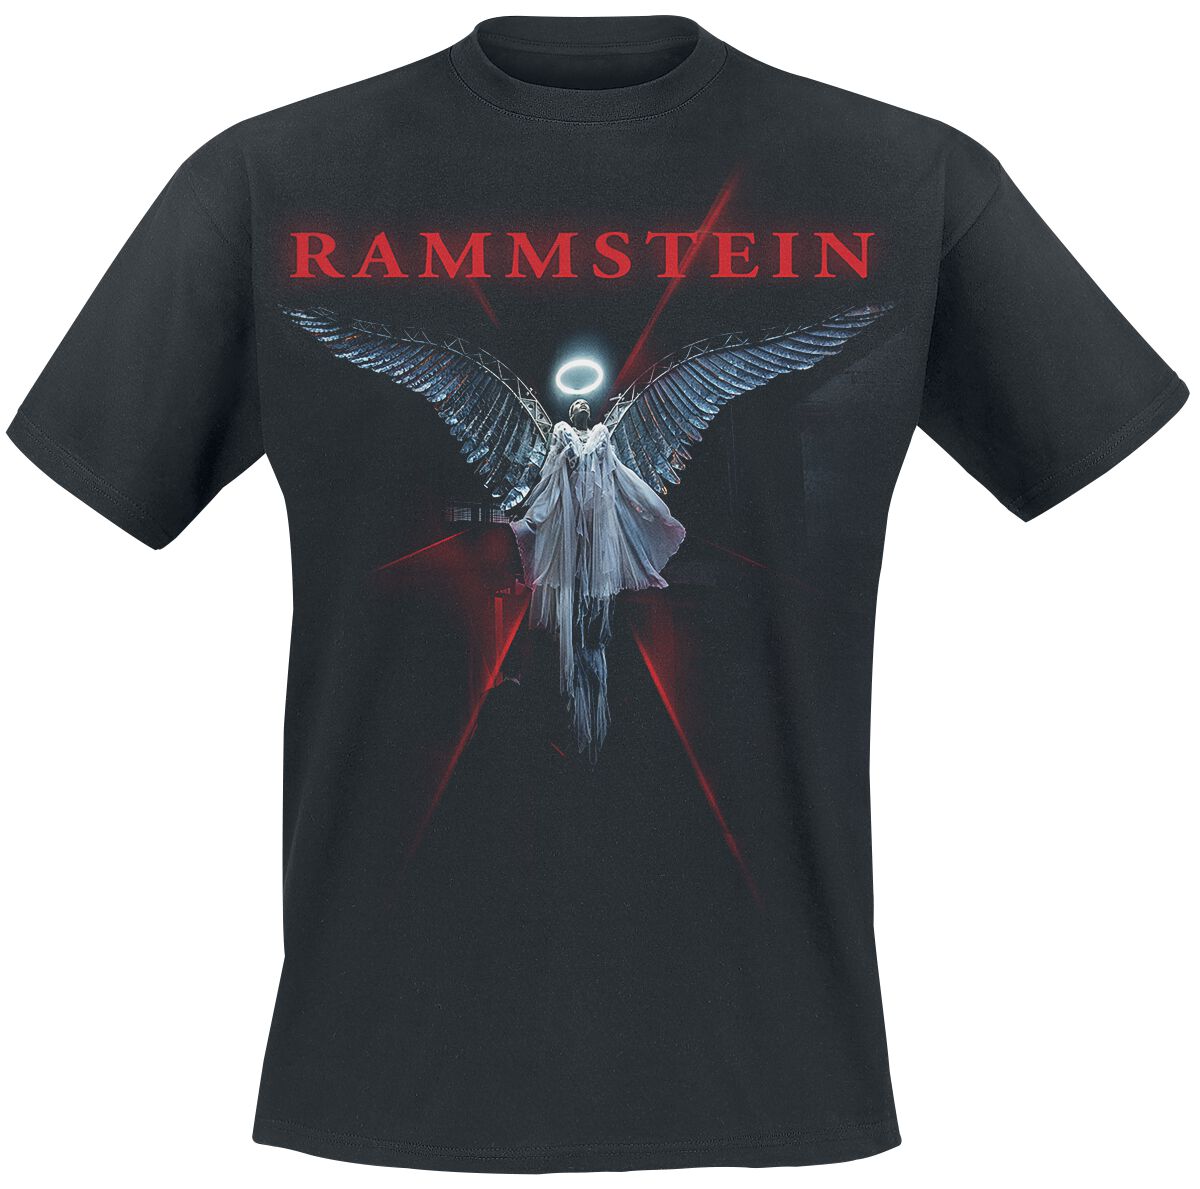 Rammstein T-Shirt - Du-Ich-Wir-Ihr - S bis 5XL - für Männer - Größe 3XL - schwarz  - Lizenziertes Merchandise!